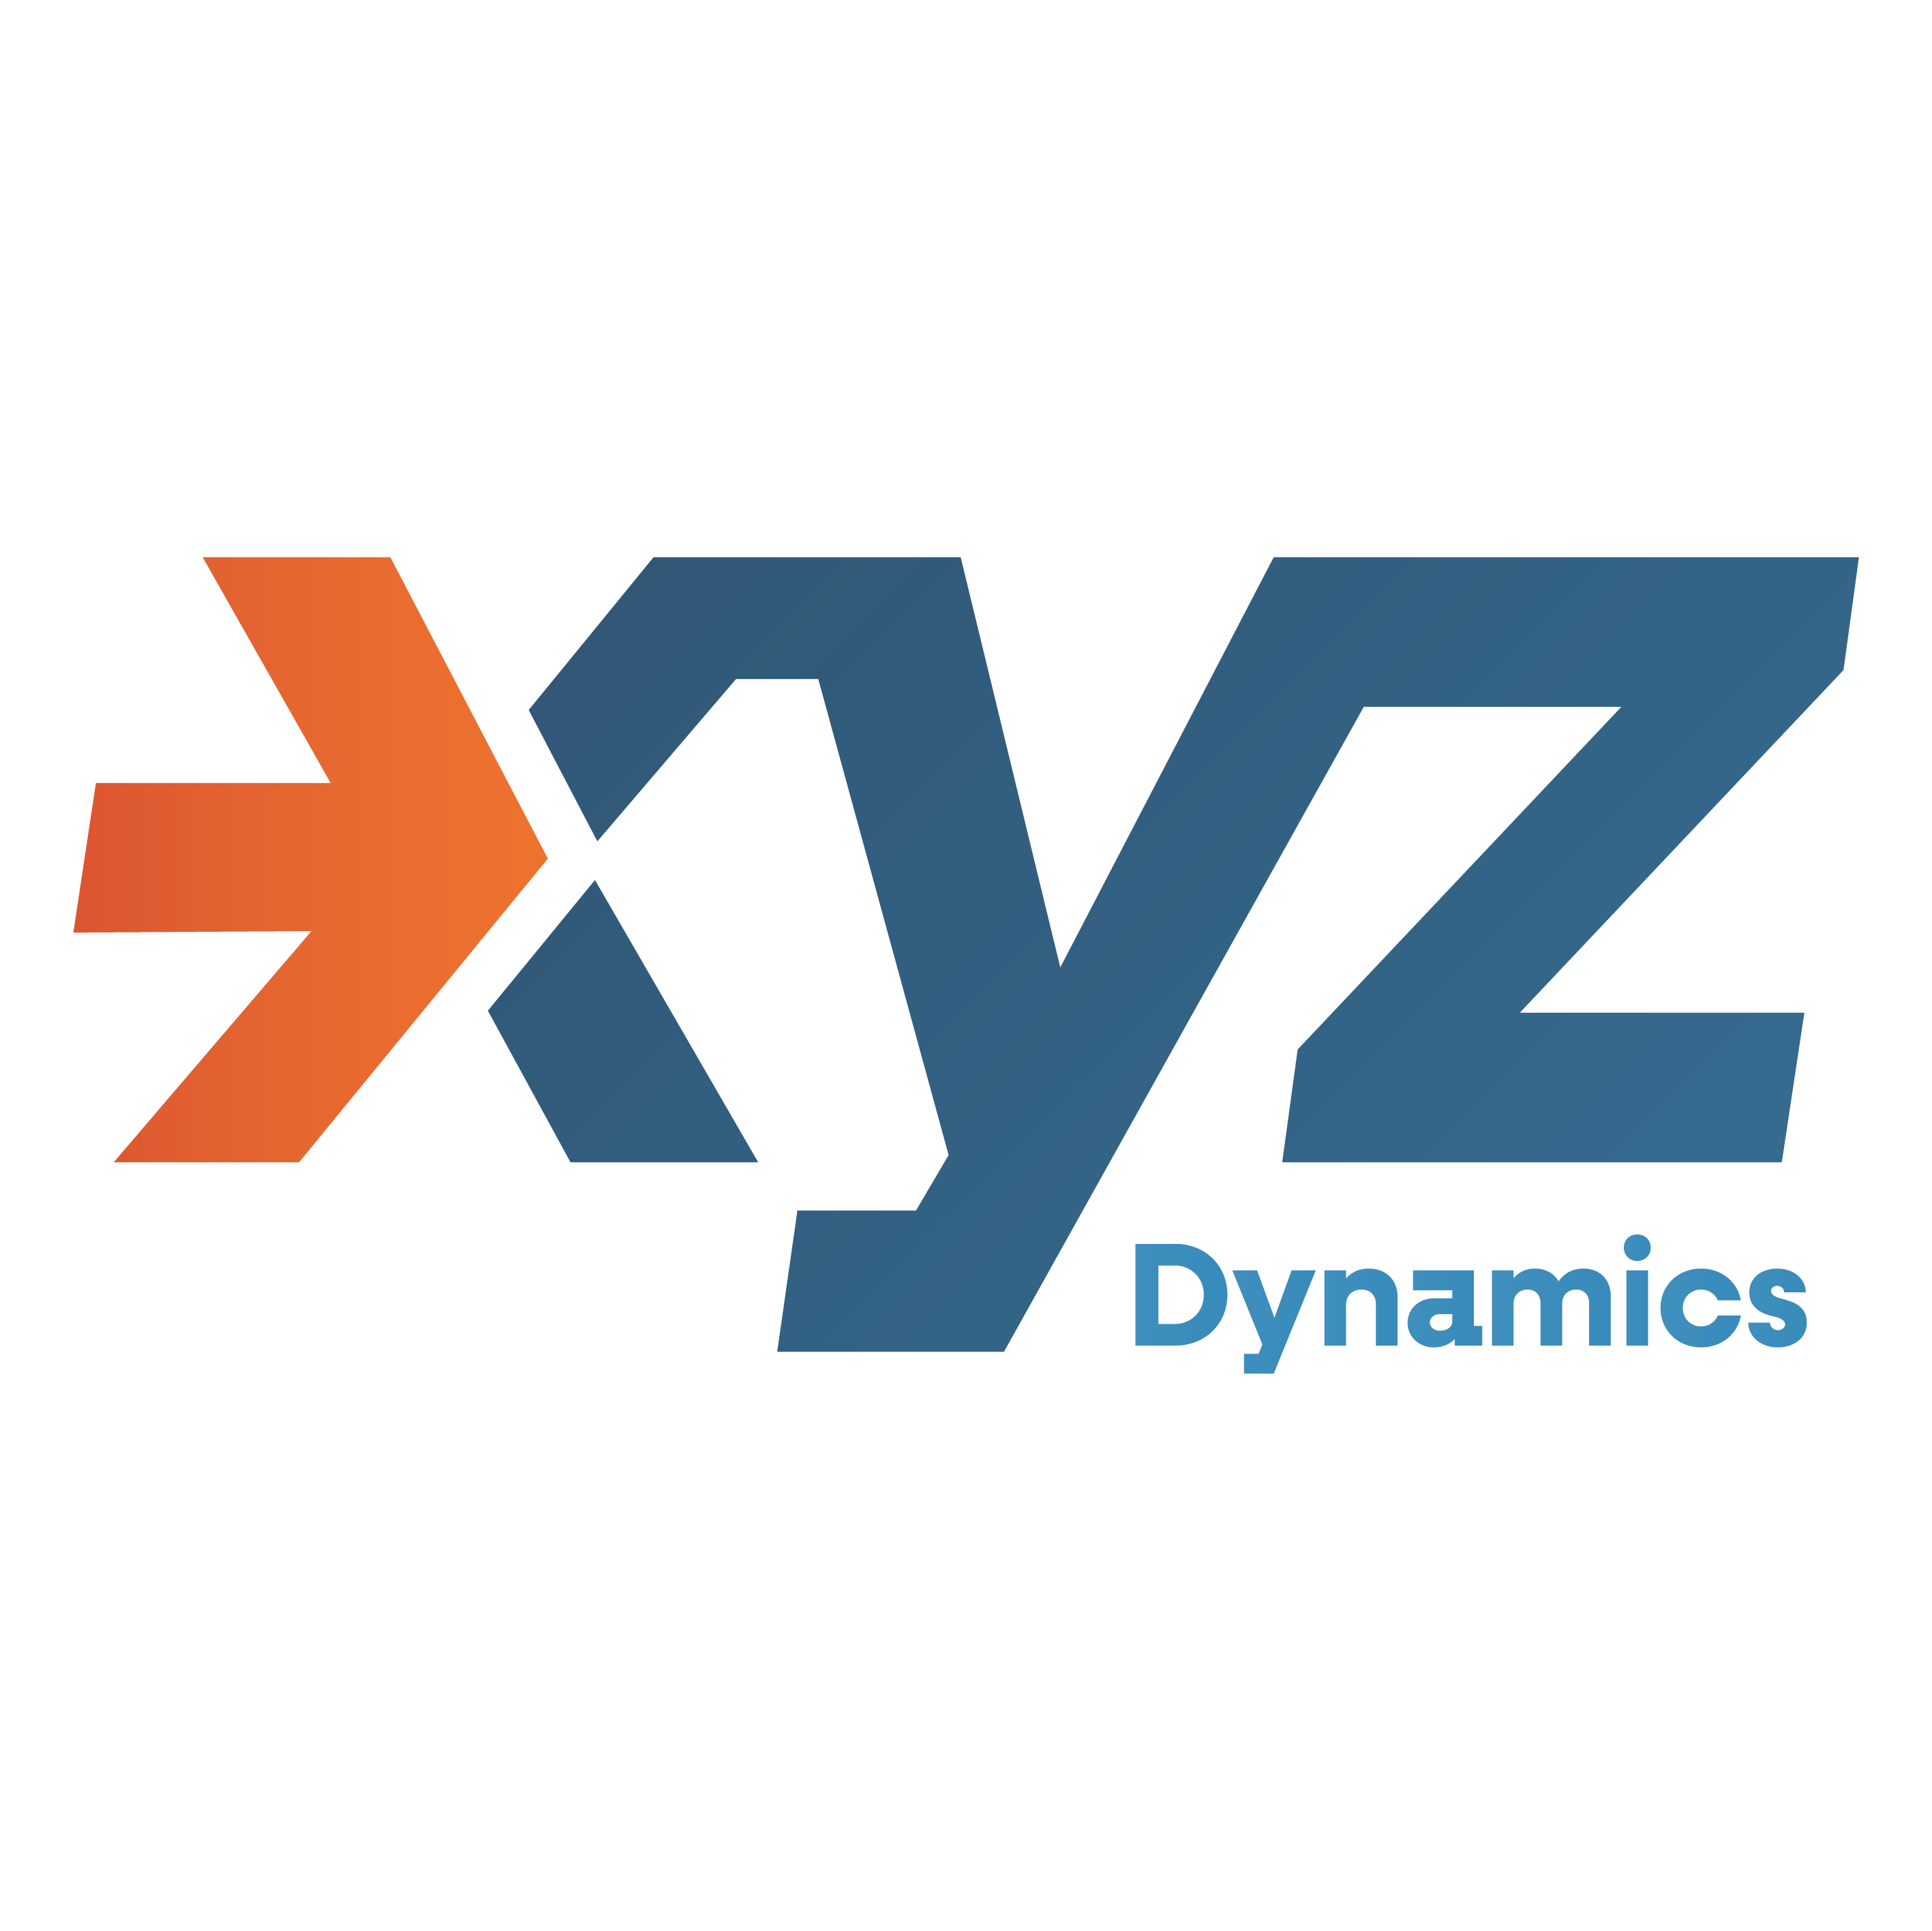 XYZ dynamics
